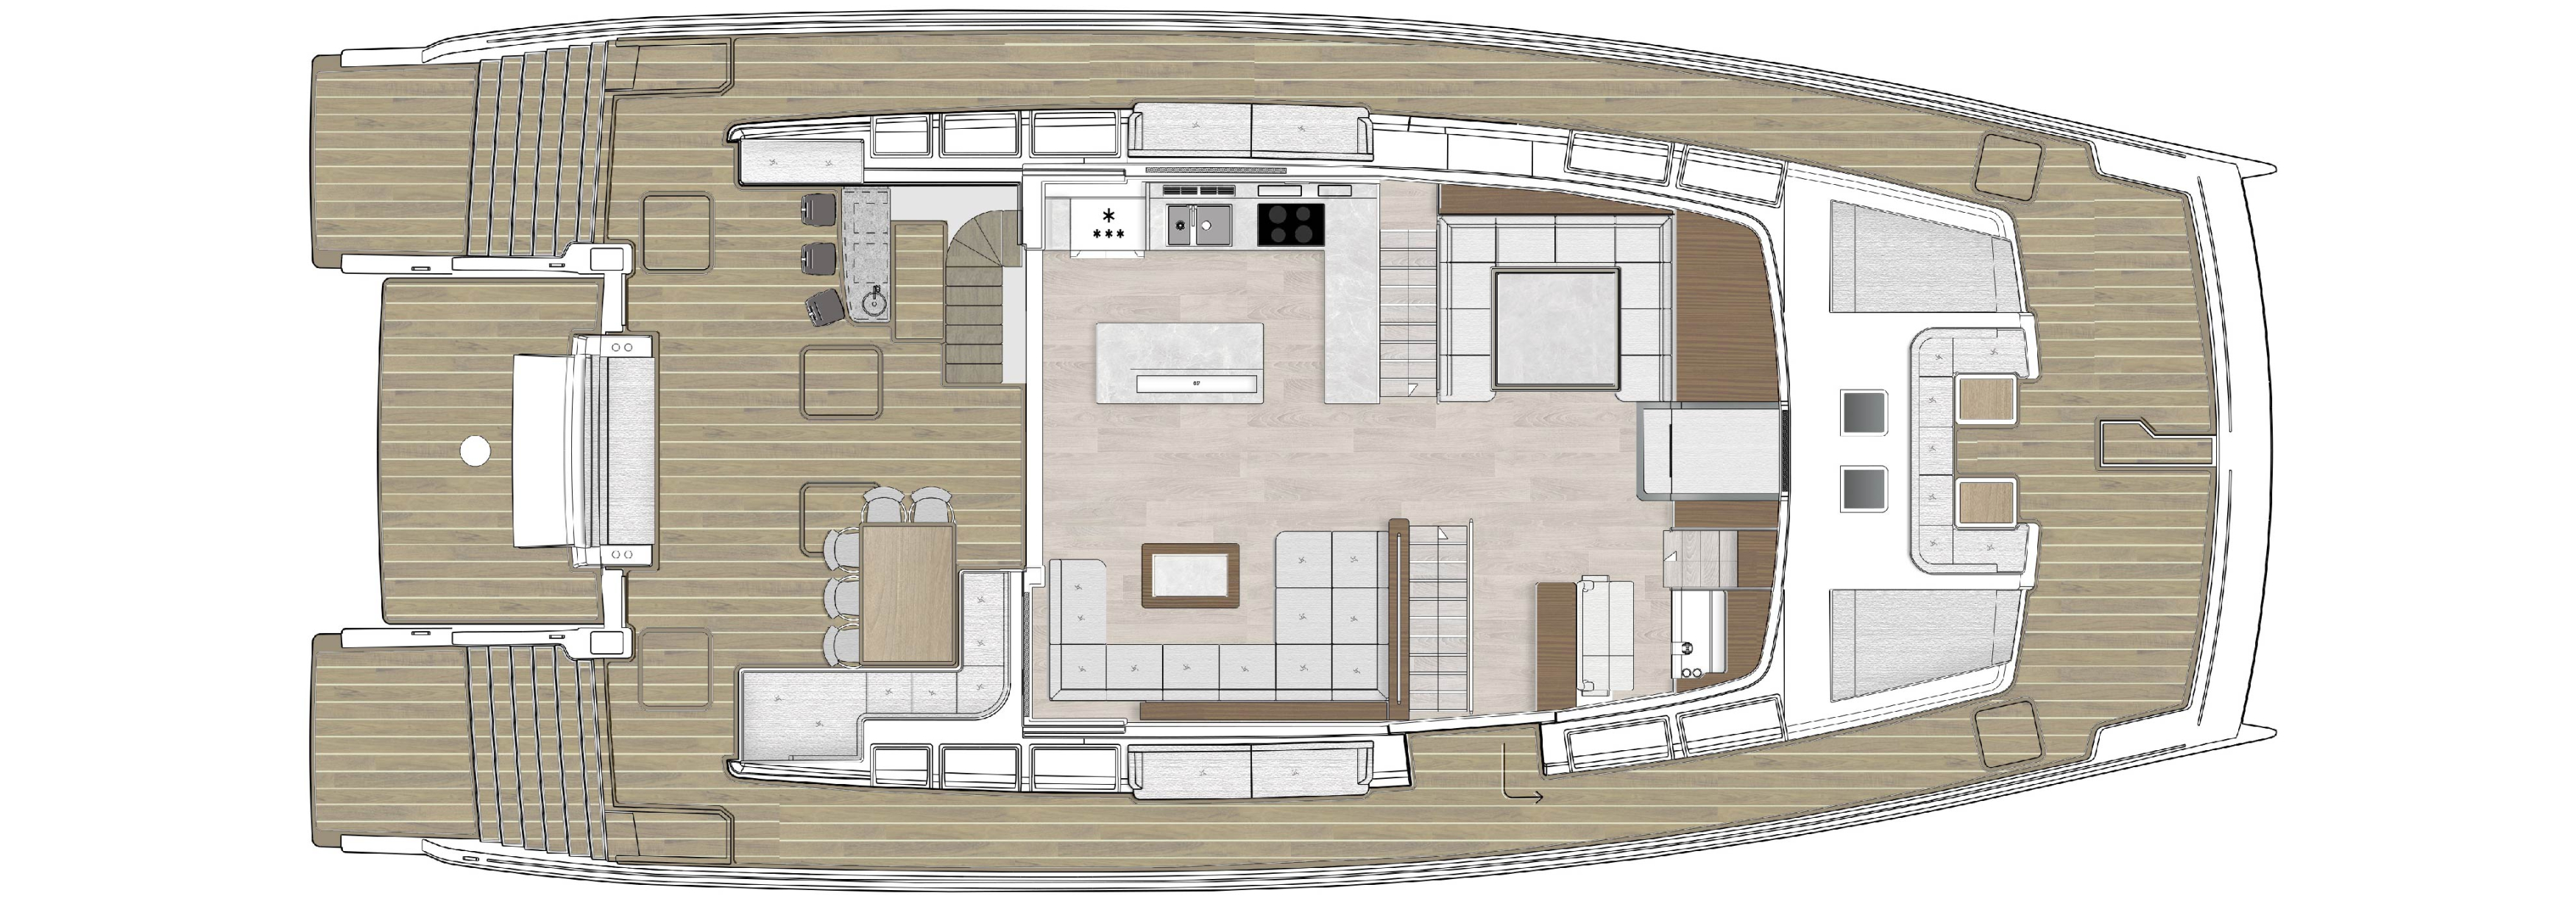 Silent 80 yacht main deck plan